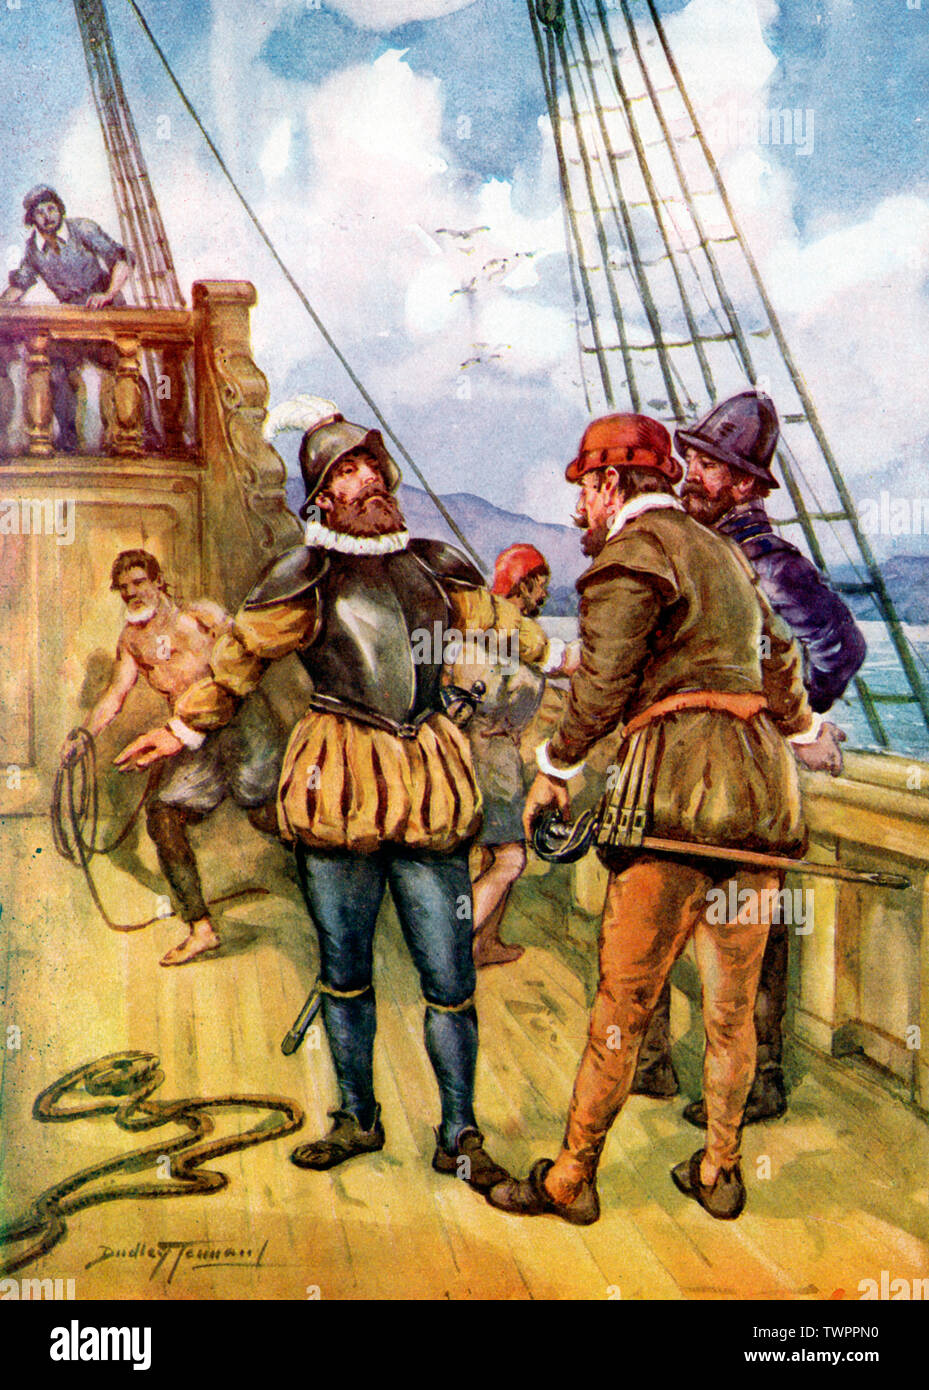 Fernando de Magellan (Ferdinand Magellan) verließ Spanien am 20.. September 1519 auf einer Expedition, die die erste Weltumrundung werden sollte. Von Dudley Tennant (1867-1952). Ziel der Expedition war es, eine westliche Route zu den Molukken (Gewürzinseln) zu finden und nach Gewürzen zu handeln. Magellan segelte über den Atlantik und entdeckte die Meerenge, die jetzt seinen Namen trägt, so dass er durch die Südspitze Südamerikas in den Pazifischen Ozean (den er nannte) gelangen konnte. Die Flotte führte die erste Überquerung des Pazifiks durch und erreichte schließlich die Molukken. Ein vielfacher Stockfoto